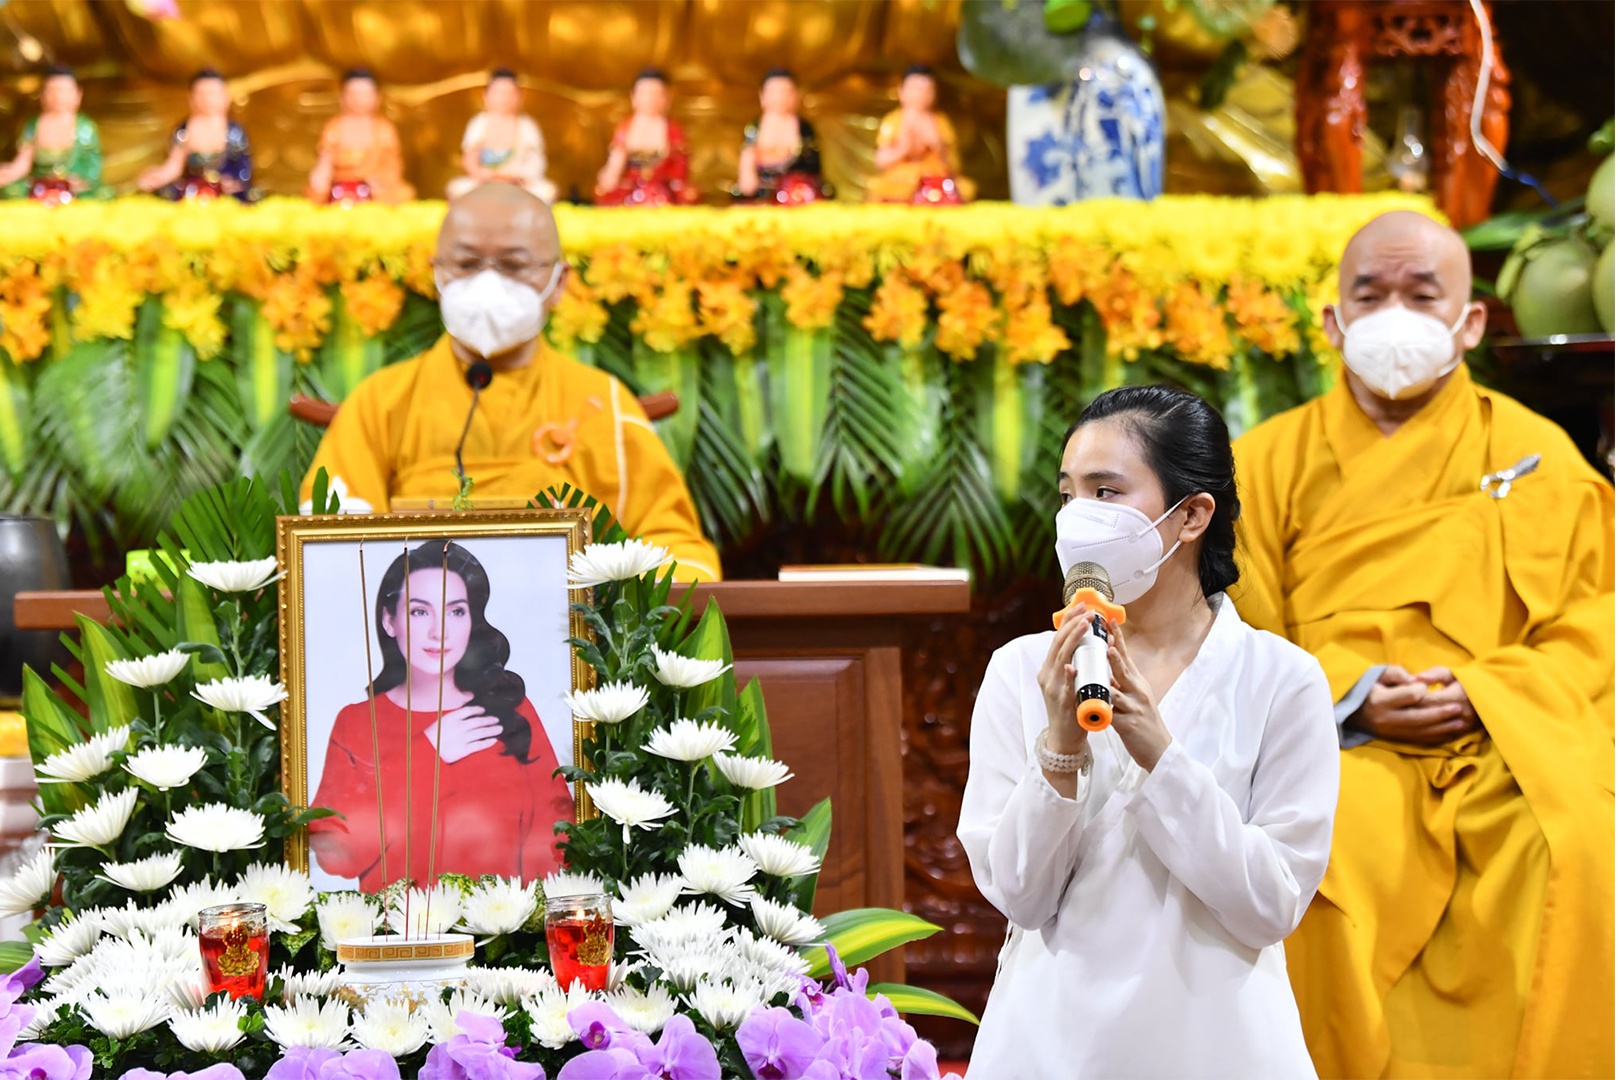 Quỳnh Trang có mặt trong lễ cầu siêu cho mẹ nuôi Phi Nhung tại chùa Giác Ngộ. Ảnh: Internet